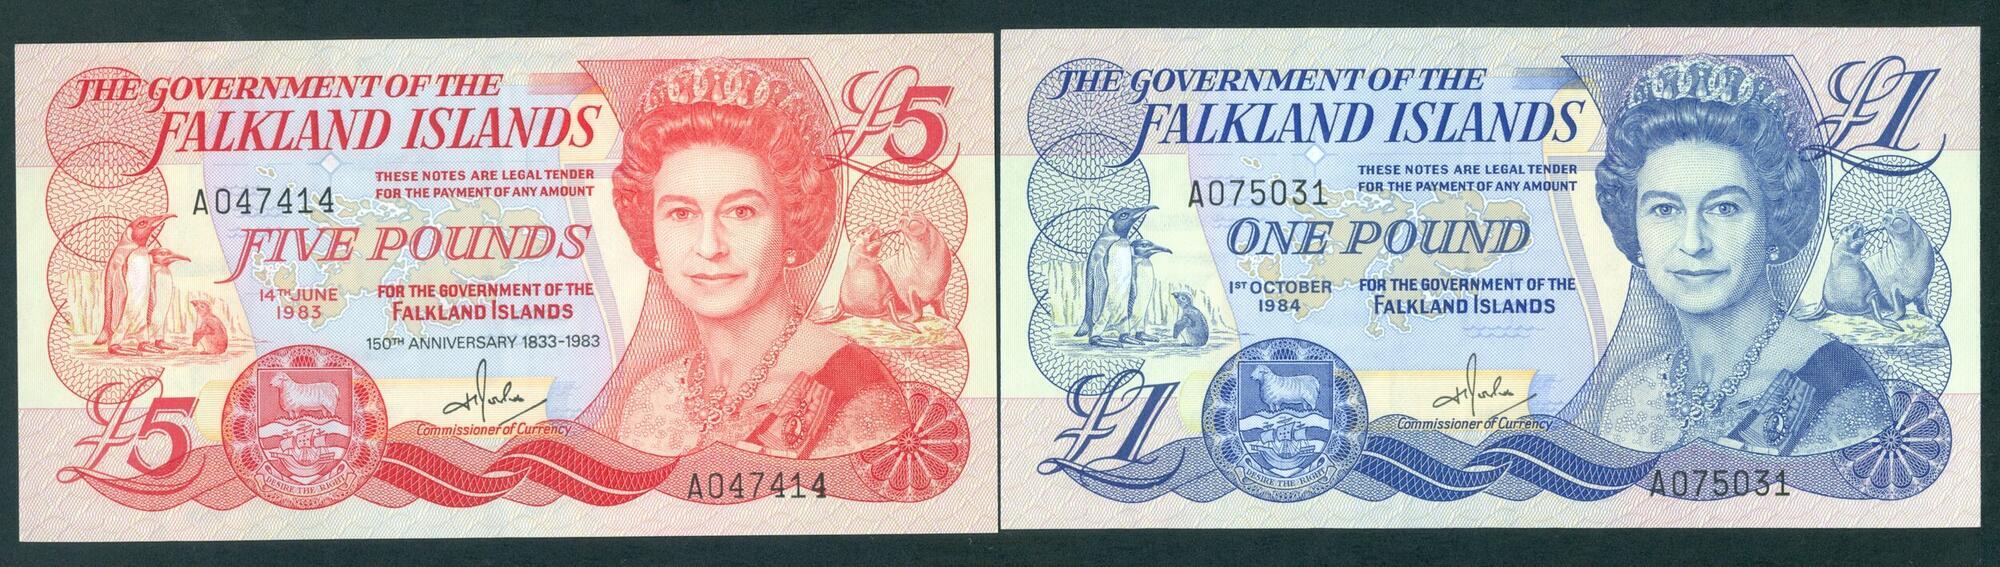 UNC Isle of Man 1983 £ 50 note depicting Queen Elizabeth II P-39 